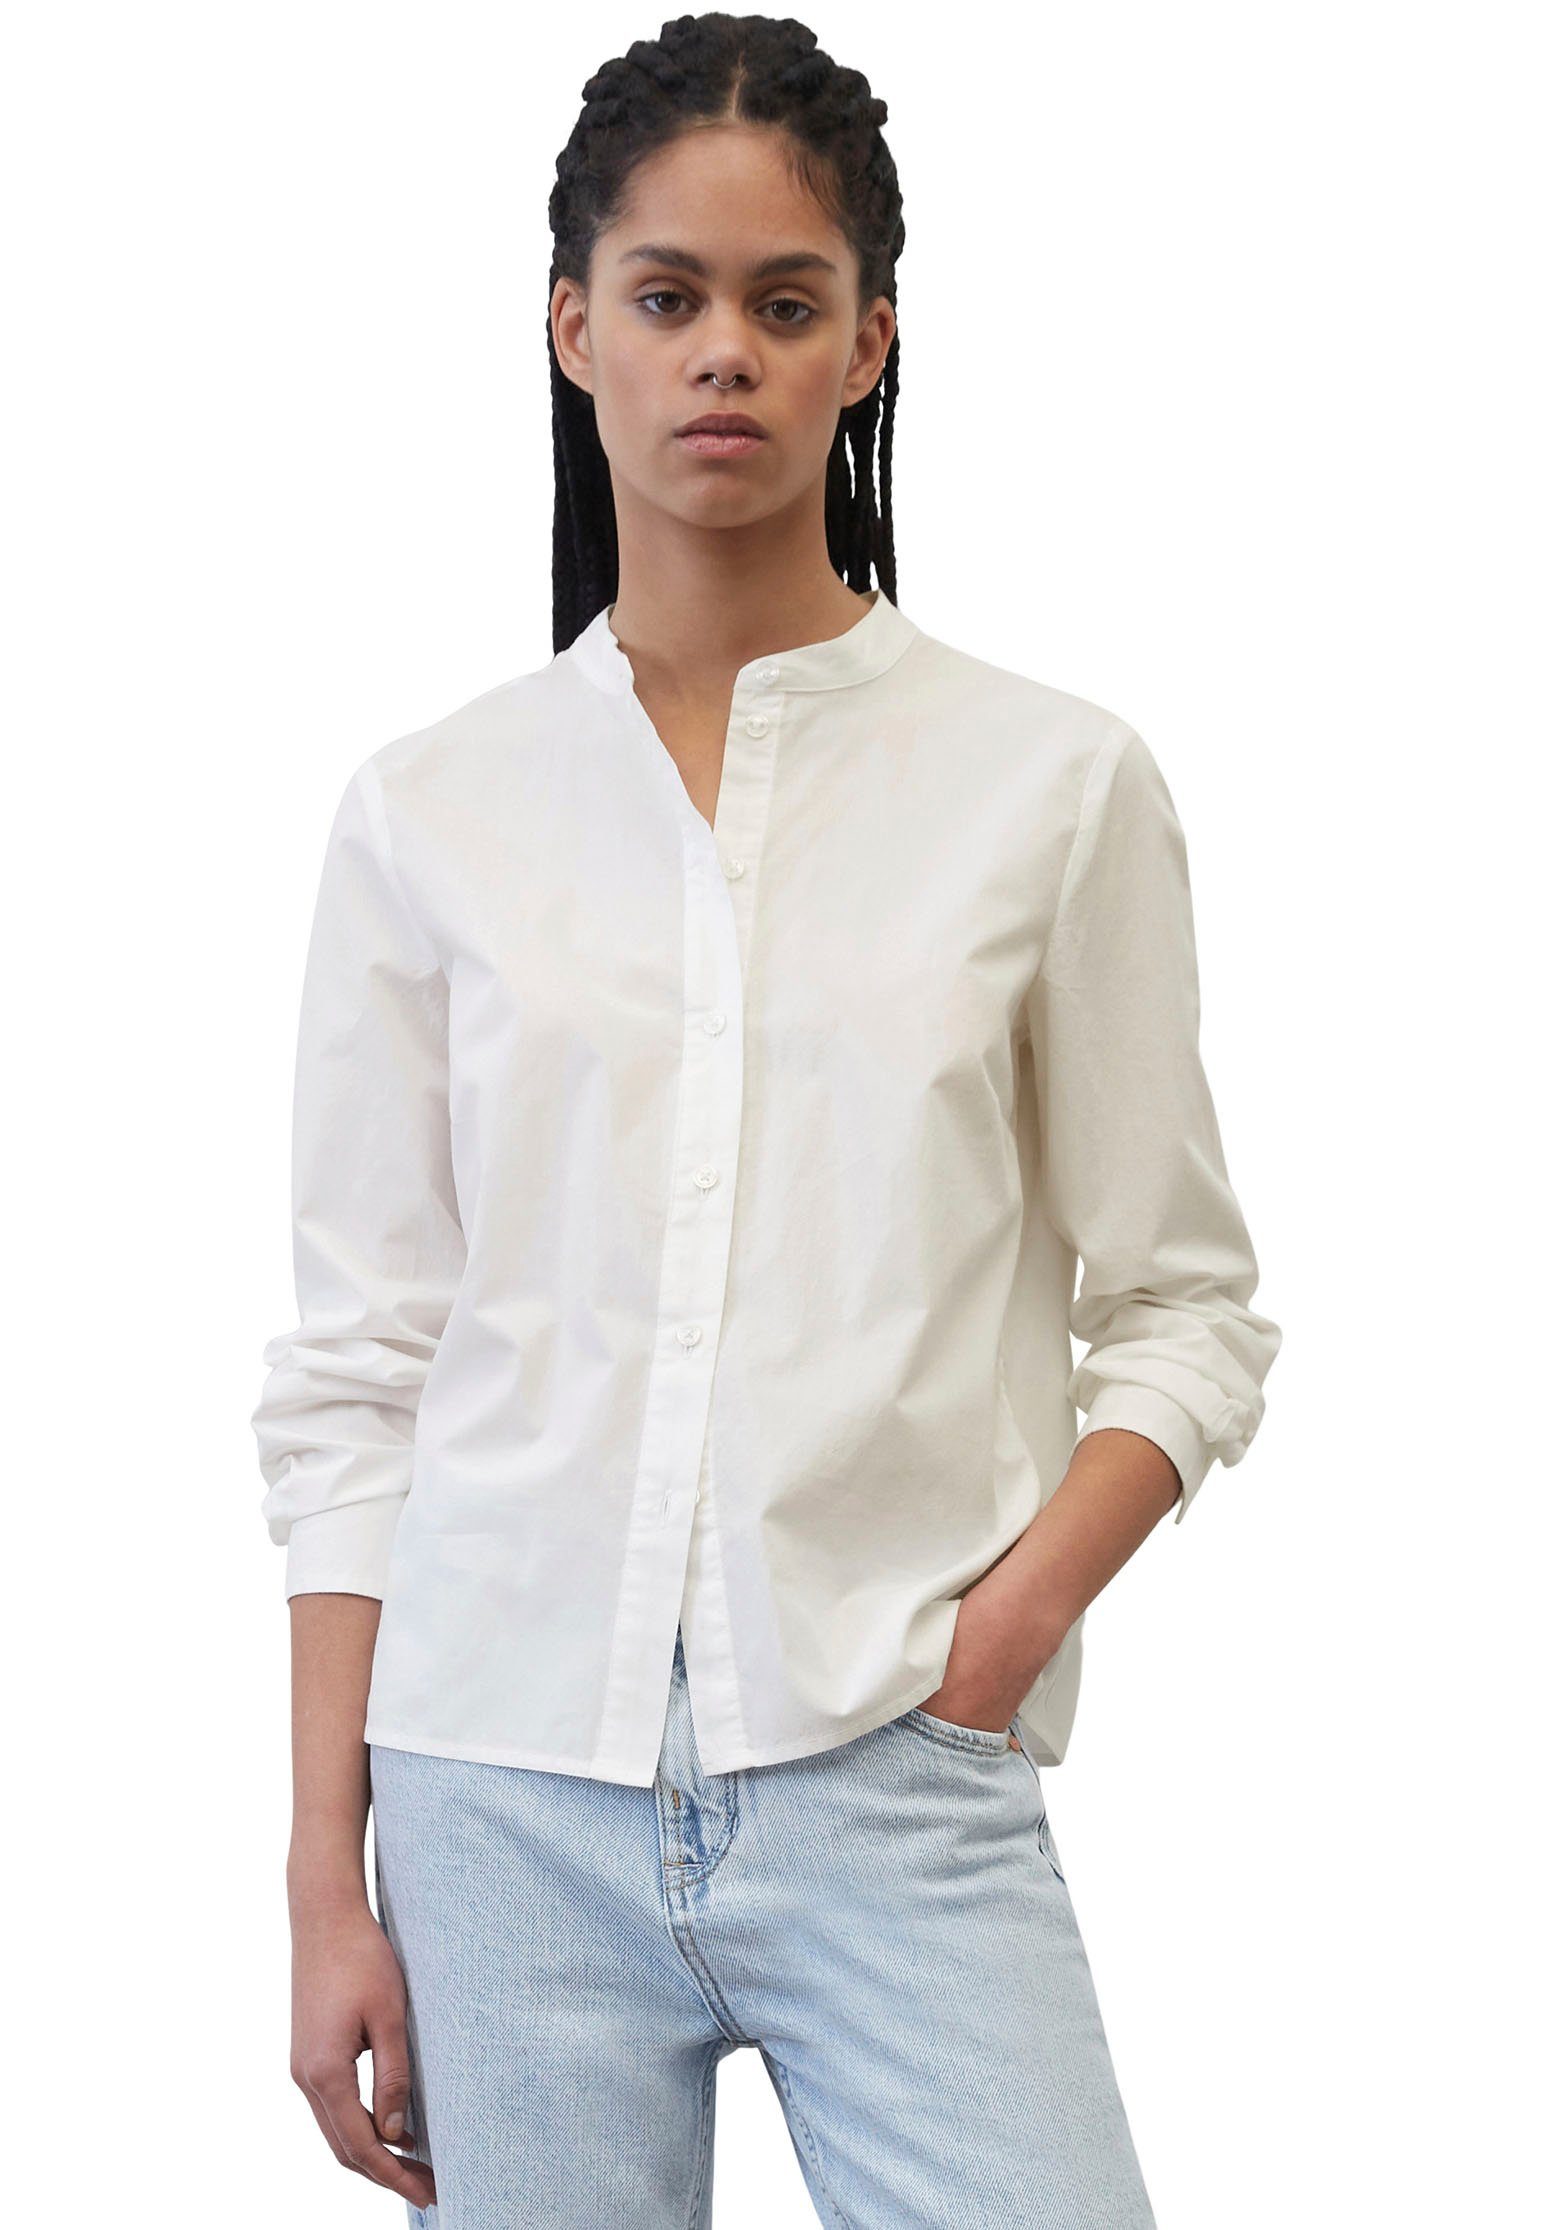 ERFO Blusen für Damen online kaufen | OTTO